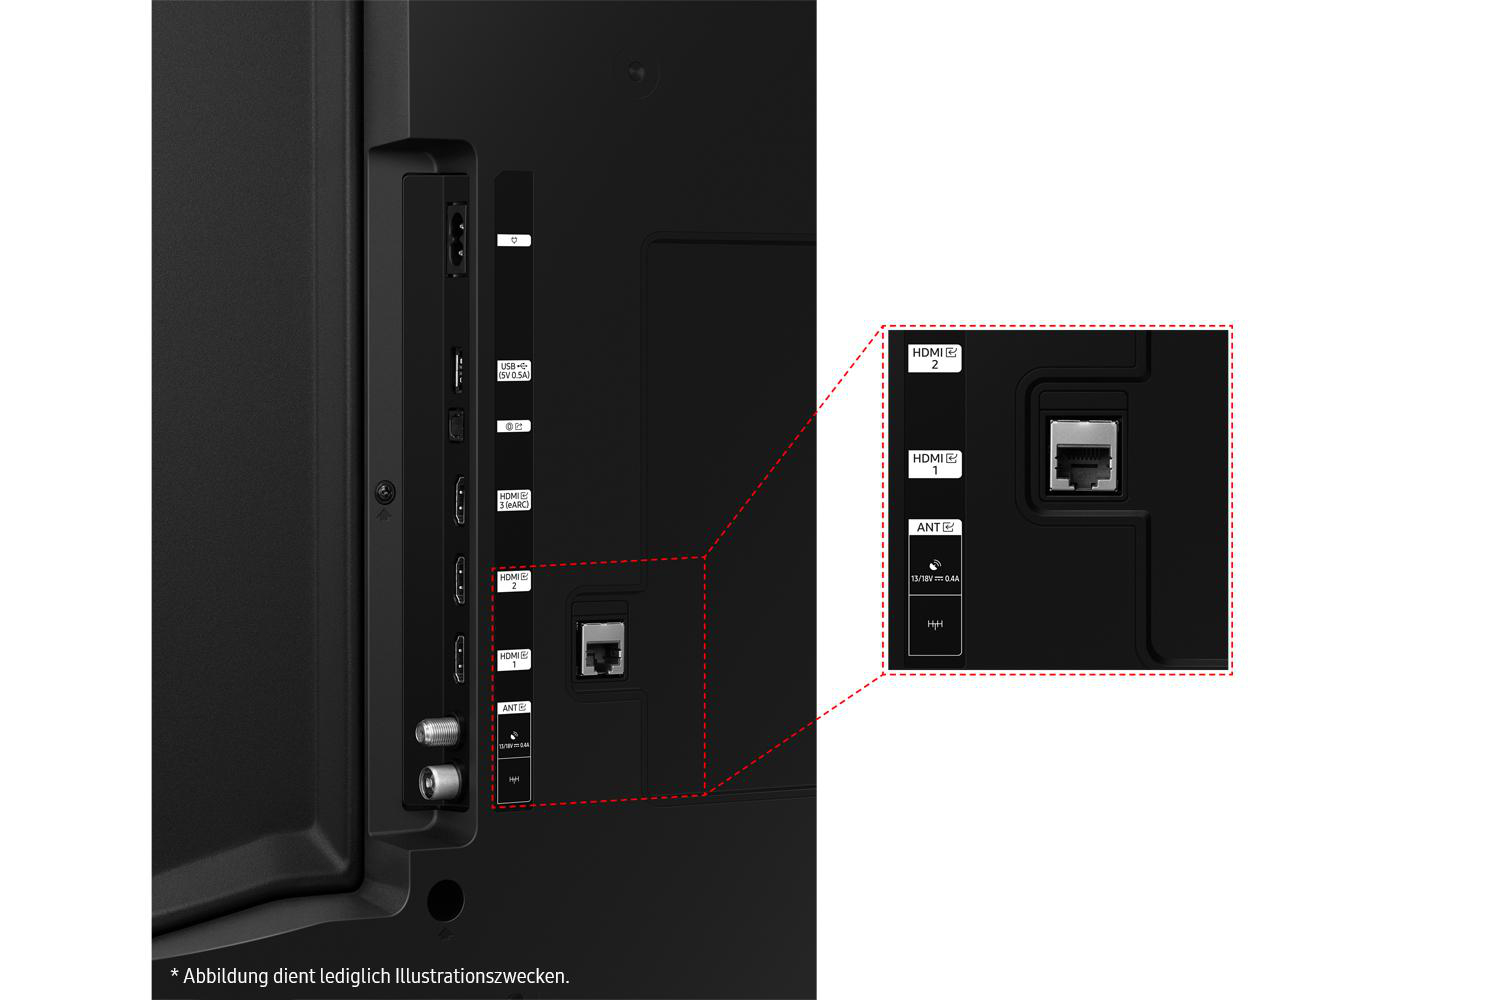 SAMSUNG GU55CU7179 LED TV Zoll TV, cm, 4K, (Flat, SMART / 55 UHD 138 Tizen)